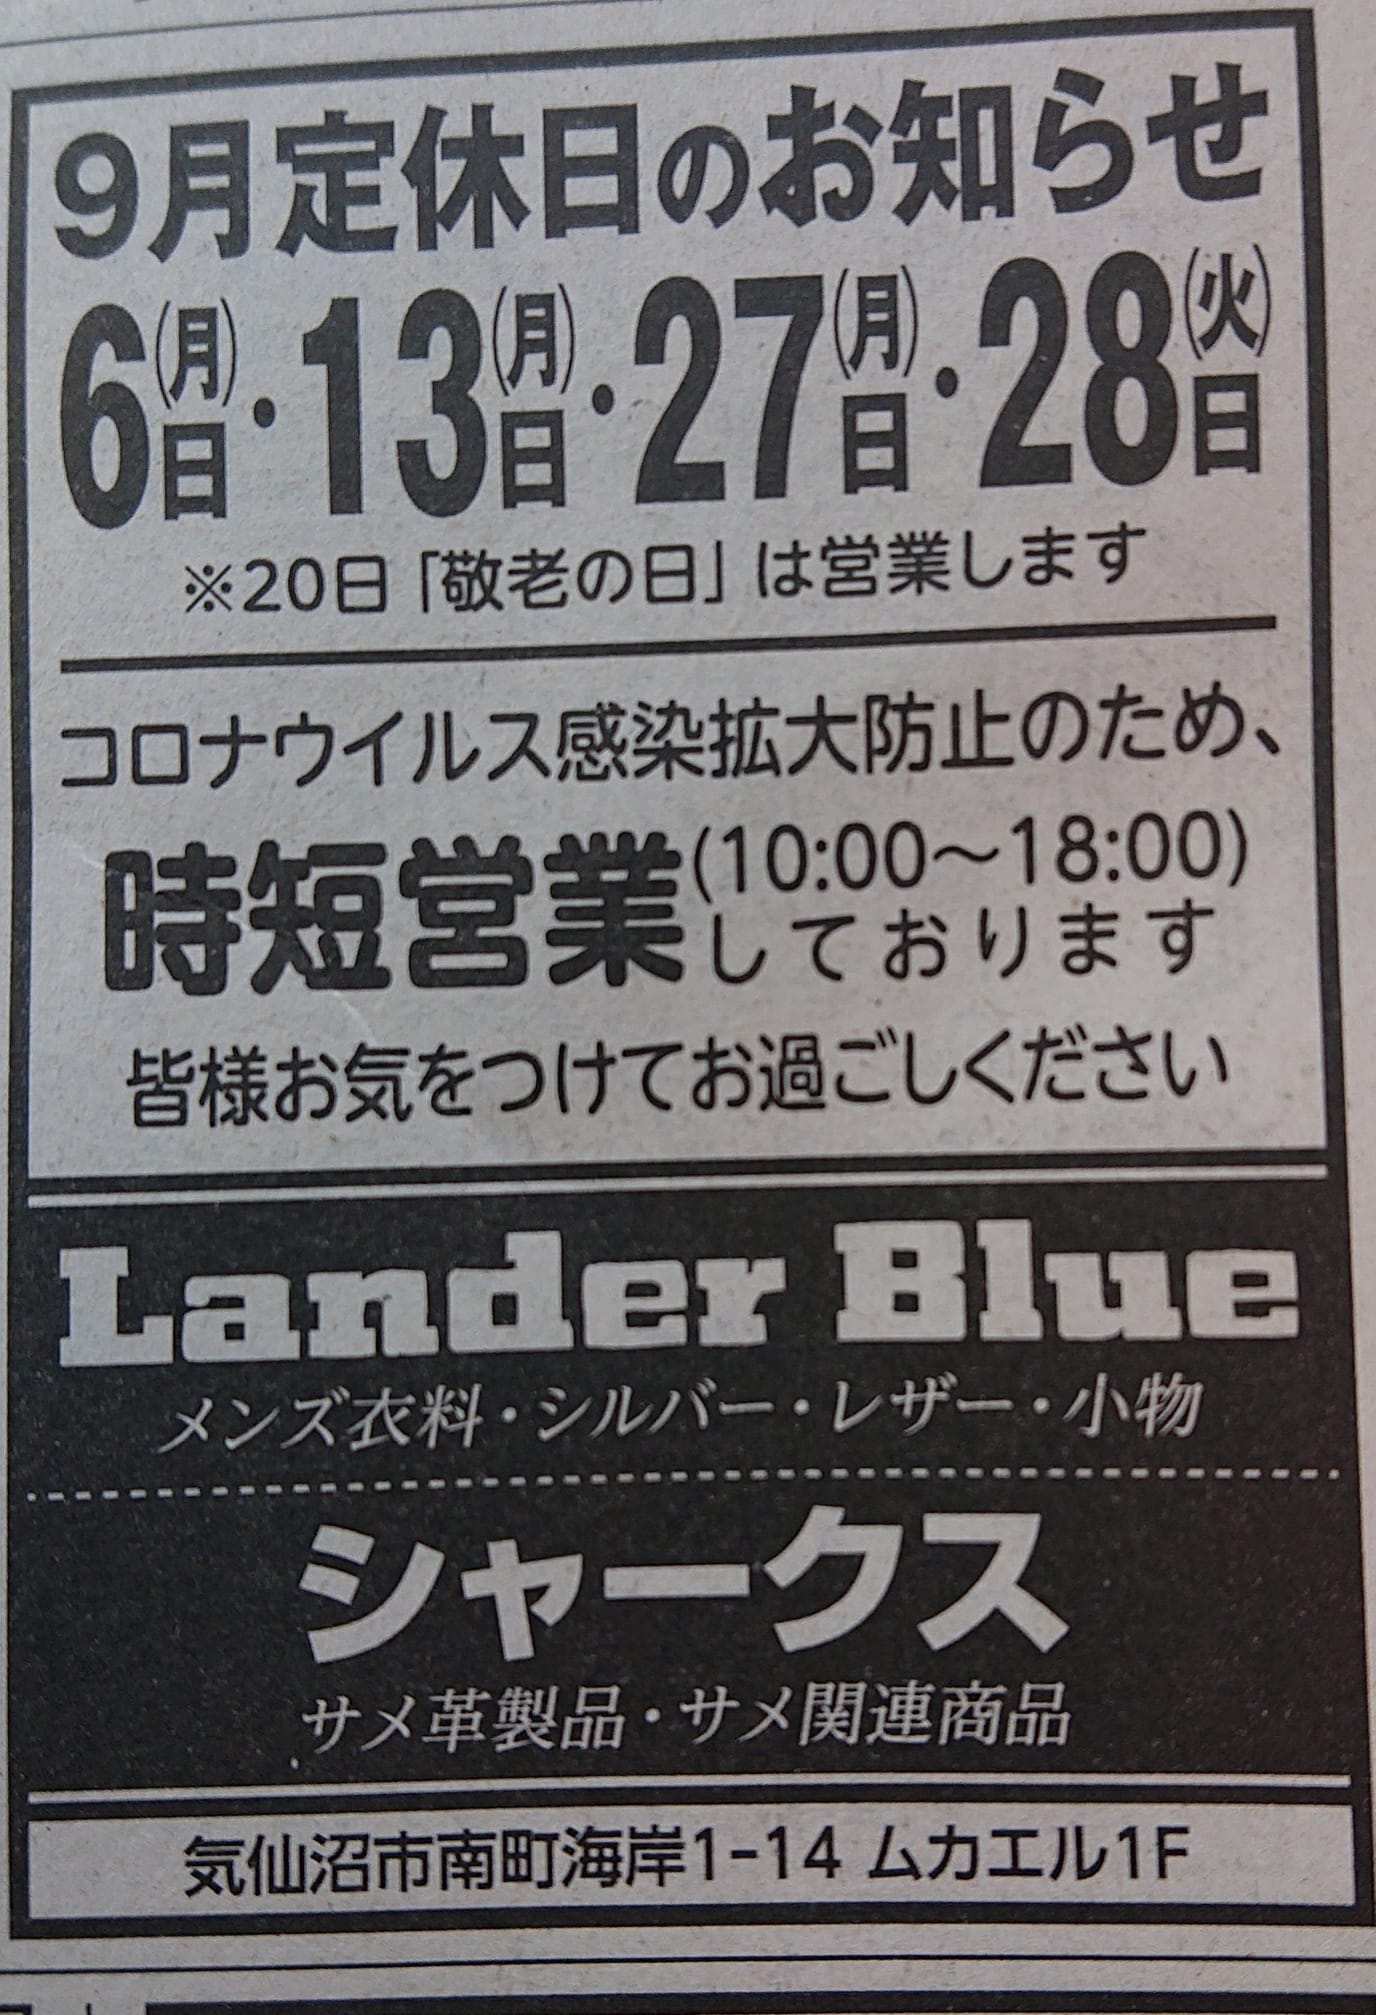 今月のLander Blue・SHARKSのお休み予定です！